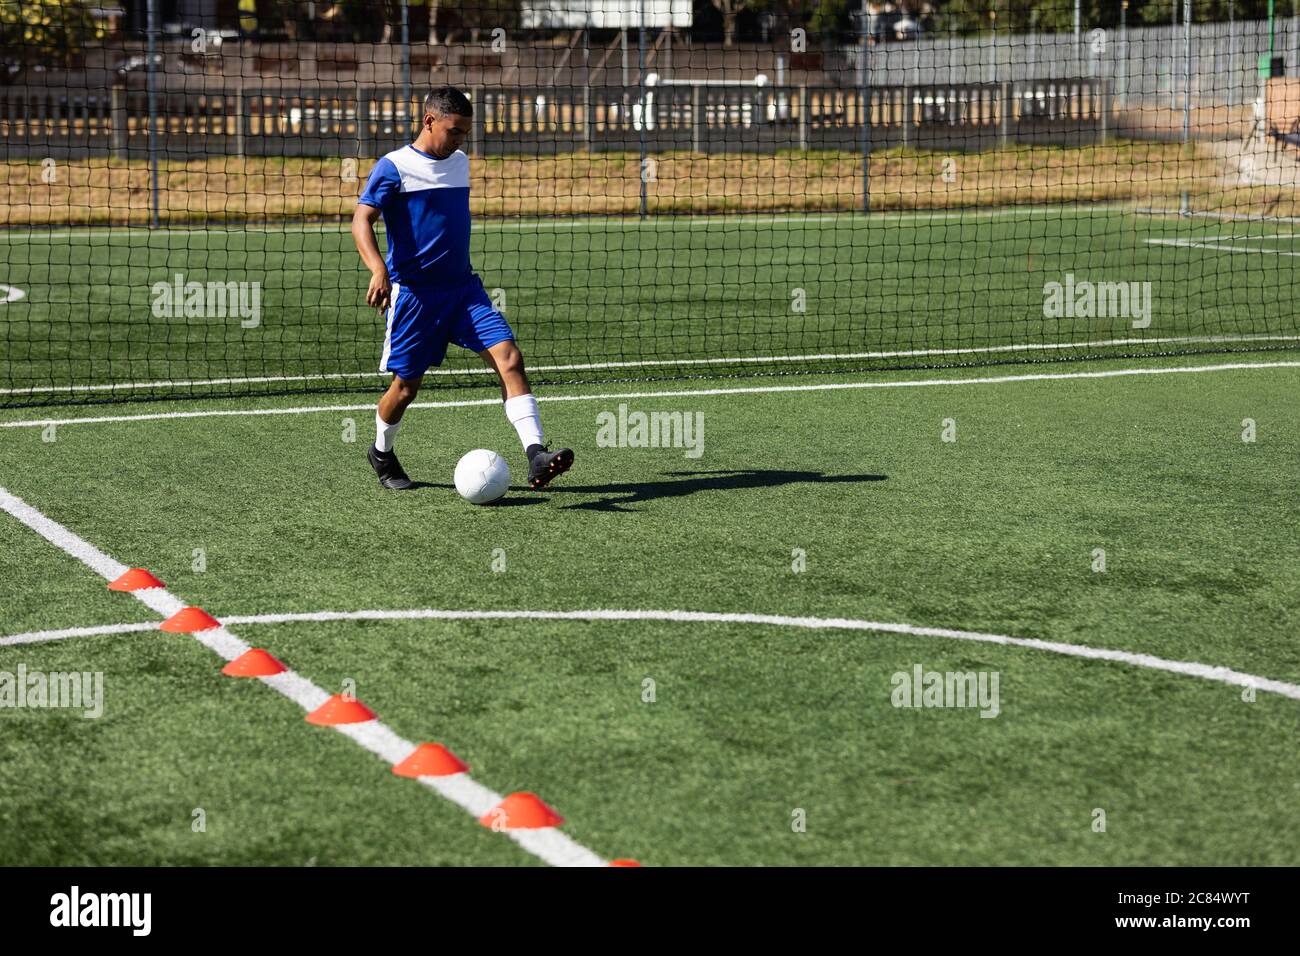 Course mixte masculin cinq un joueur de football latéral portant un entraînement de bande d'équipe sur un terrain de sport au soleil, s'échauffe avec le ballon. Banque D'Images